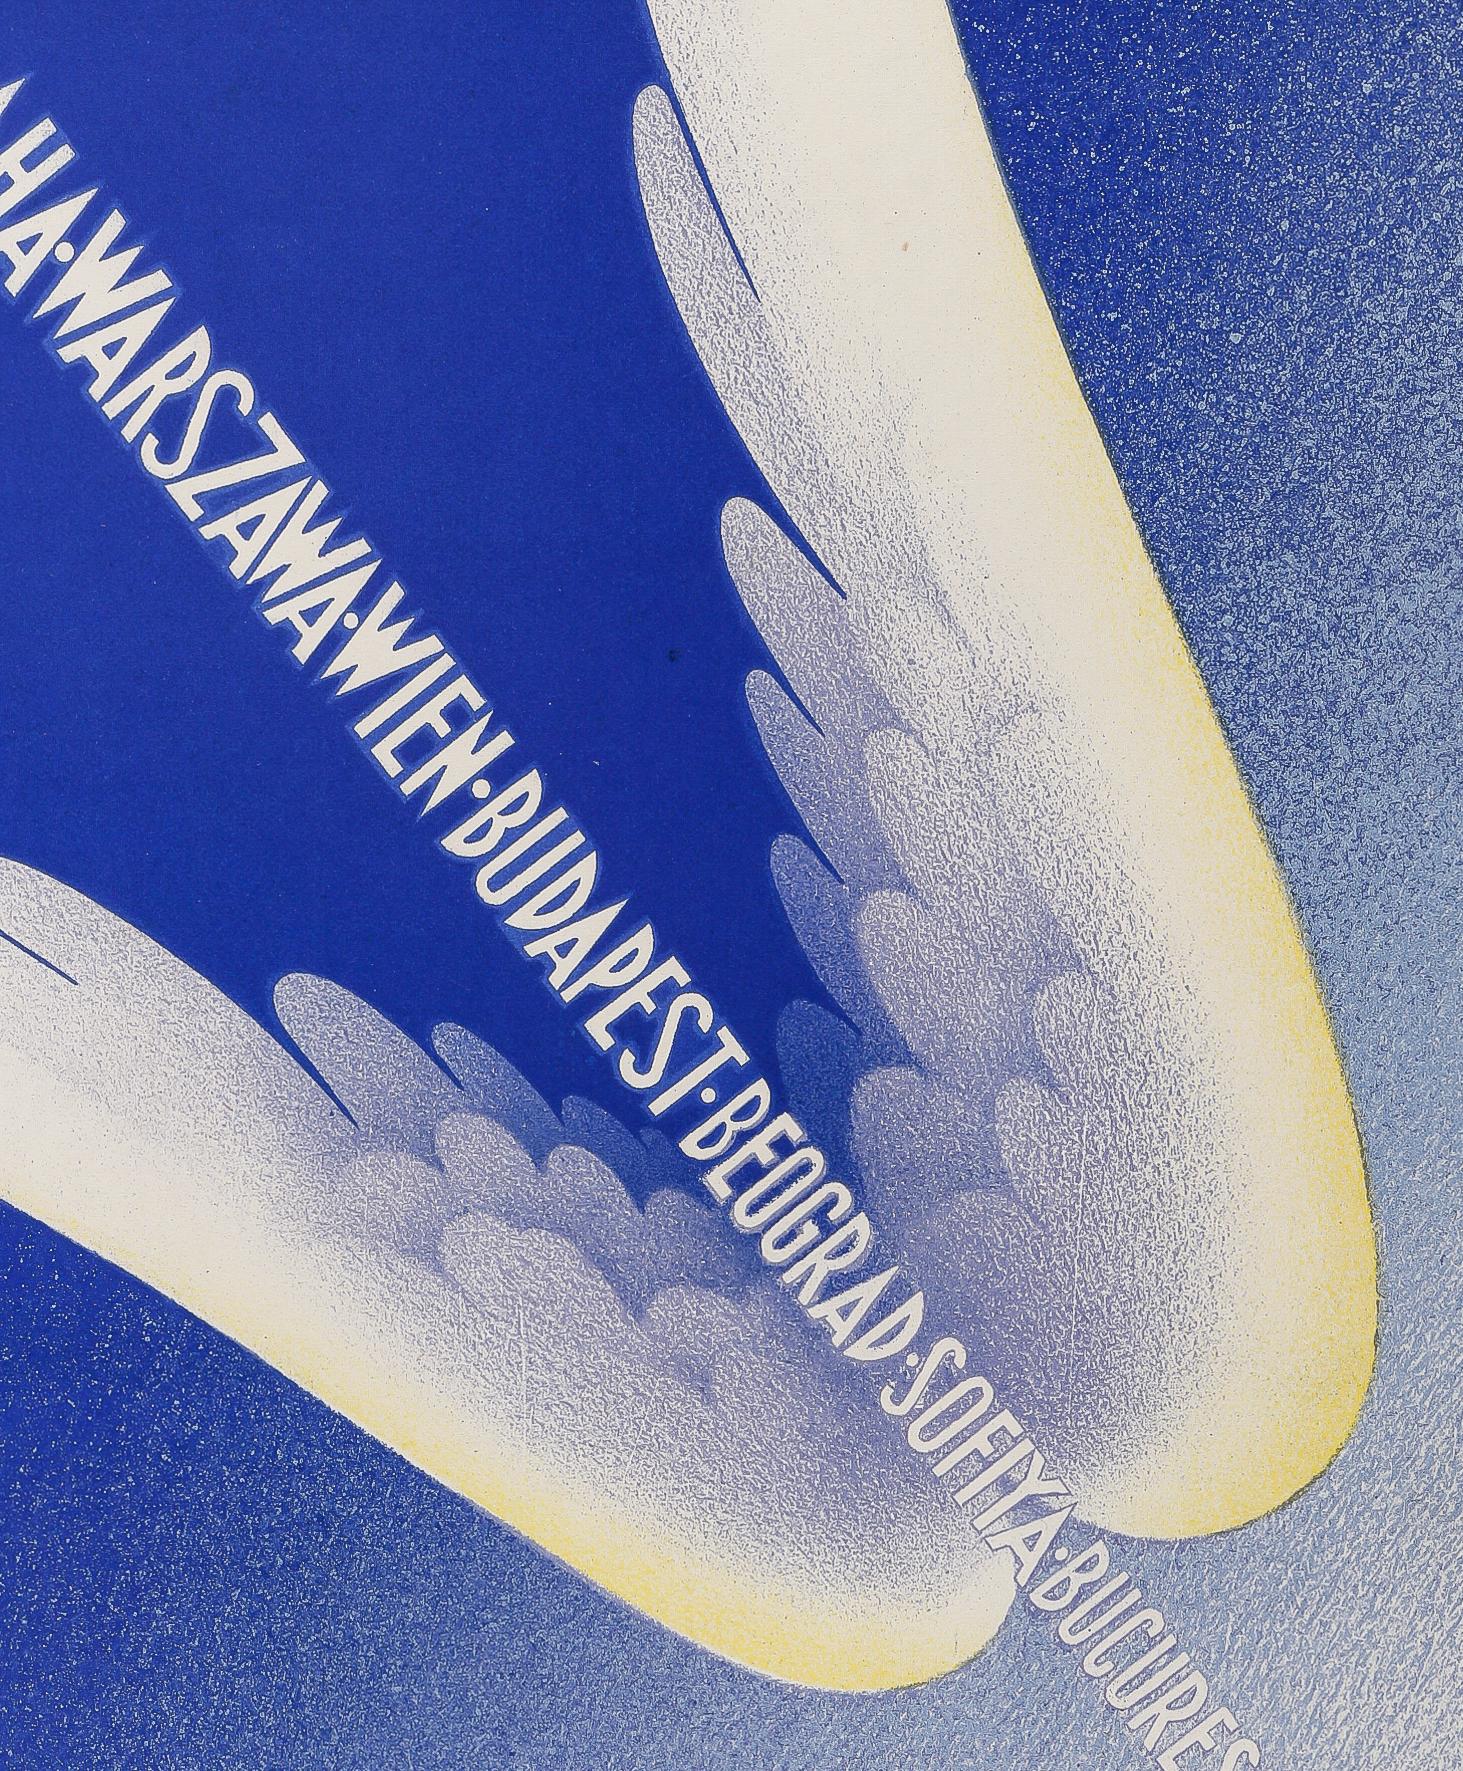 Plakat der Air France, Fleche d'Orient, hergestellt von Paolo-Frederico Garretto im Jahr 1936.

Künstler: Paolo-Federico Garretto (1903-1989)
Titel:  Air France - Flèche d'Orient
Datum: 1936
Größe: 11,8 x 19,7 Zoll. / 30 x 50 cm.
Druckerei: Alliance